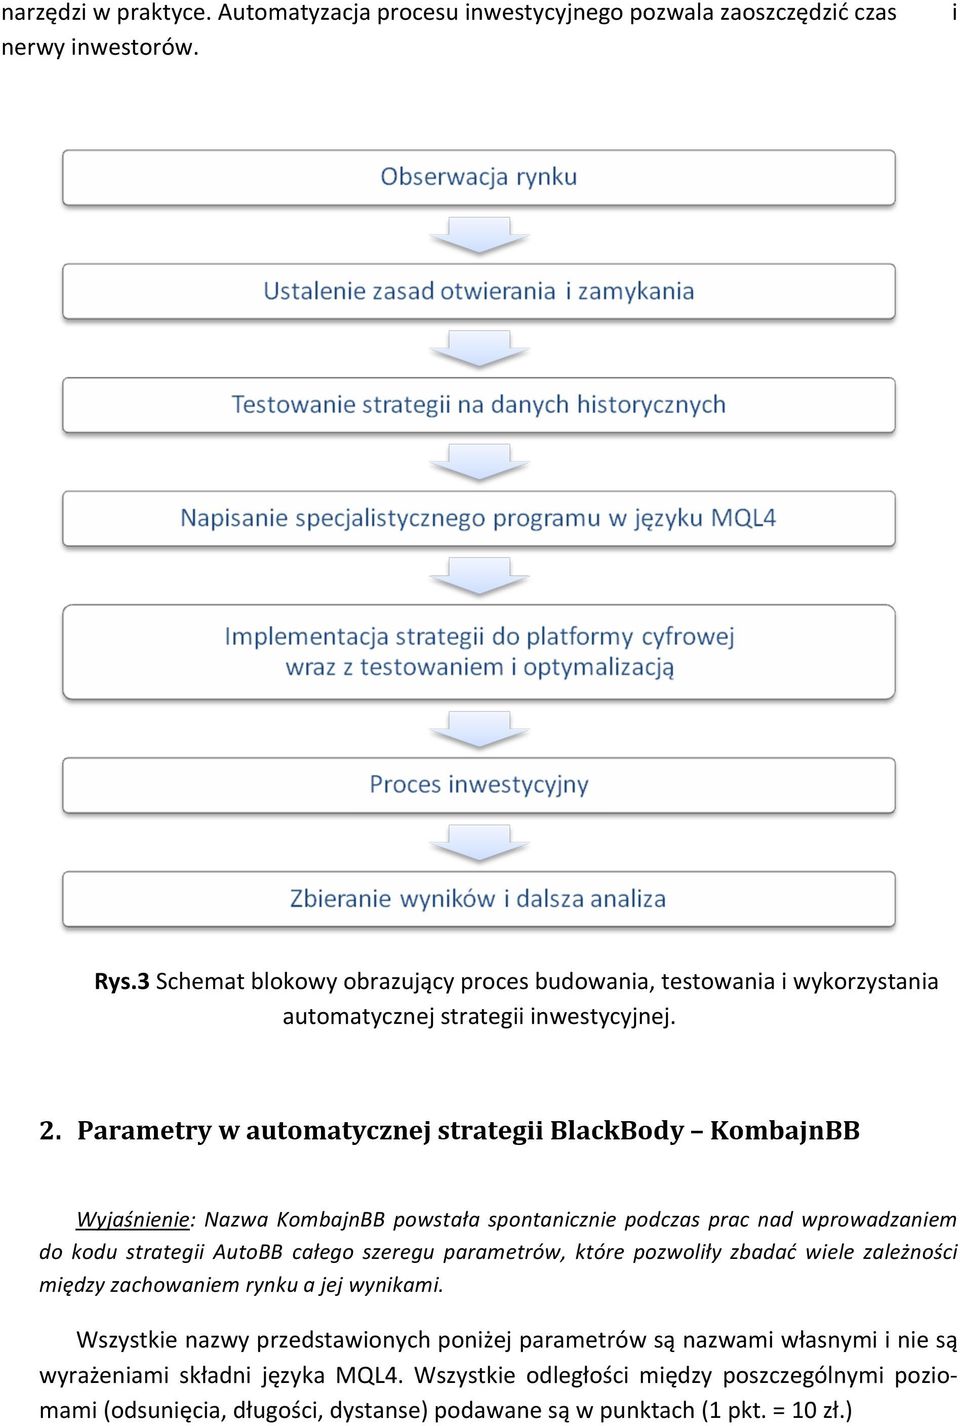 Parametry w automatycznej strategii BlackBody KombajnBB Wyjaśnienie: Nazwa KombajnBB powstała spontanicznie podczas prac nad wprowadzaniem do kodu strategii AutoBB całego szeregu